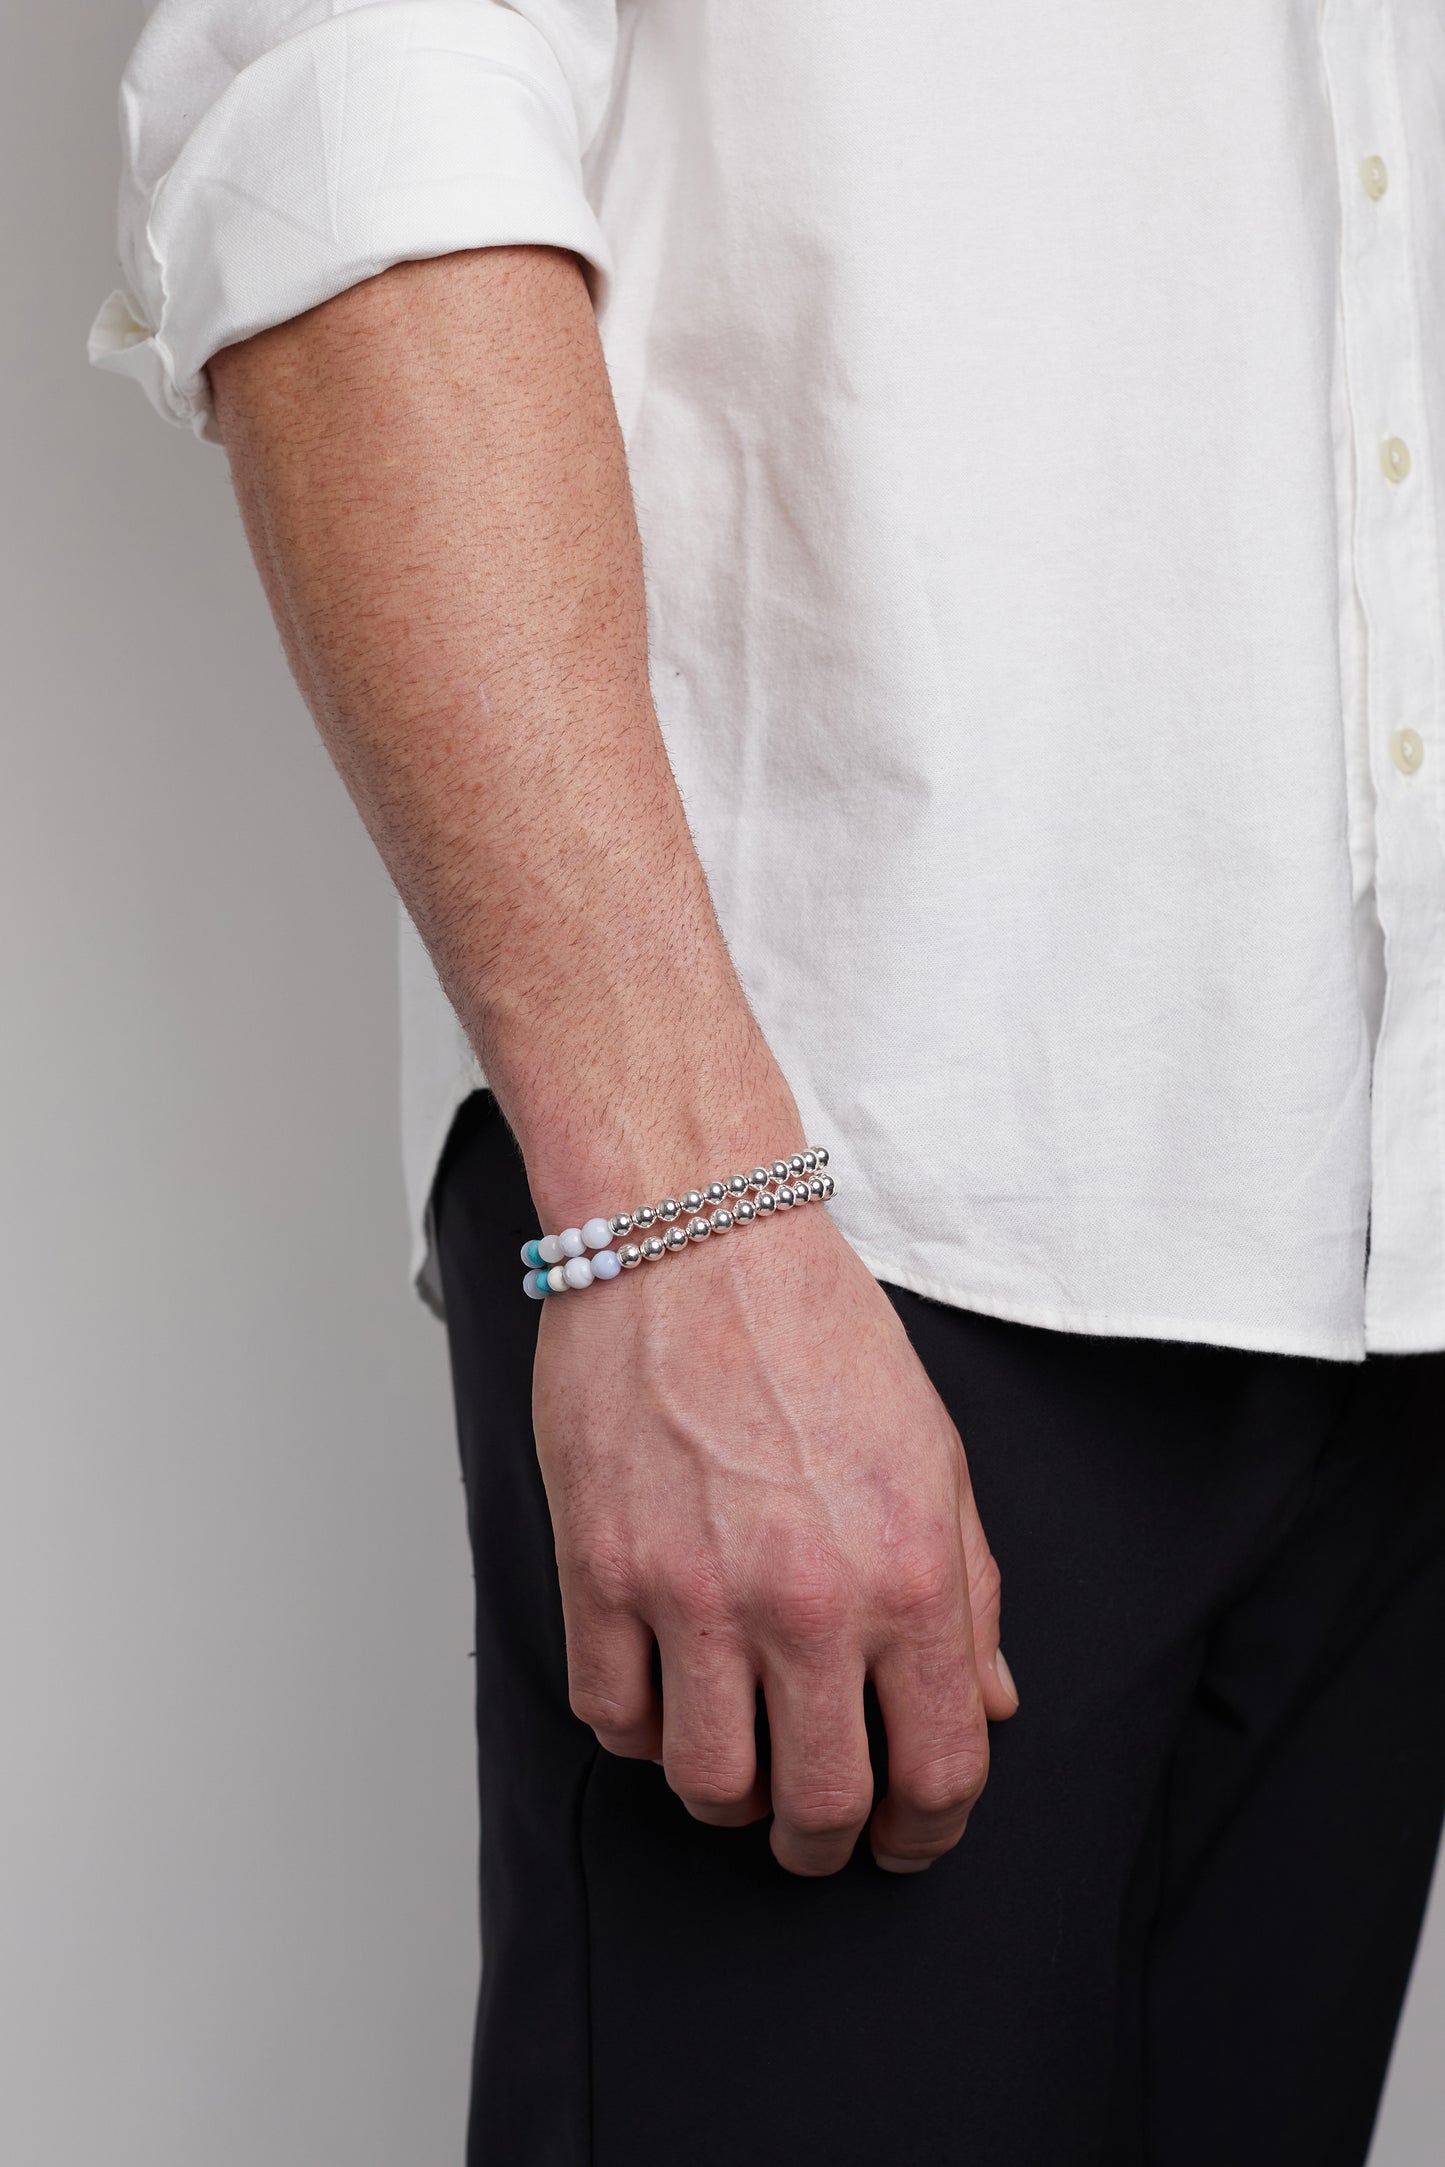 N 16 PROTECTION / INNER STRENGTH Healer's Bracelets Men's (Set of 2) Silver